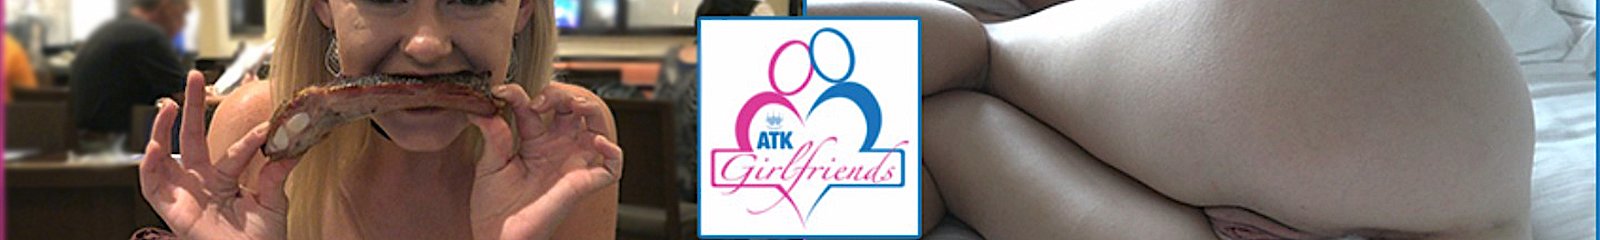 ATK Girlfriends